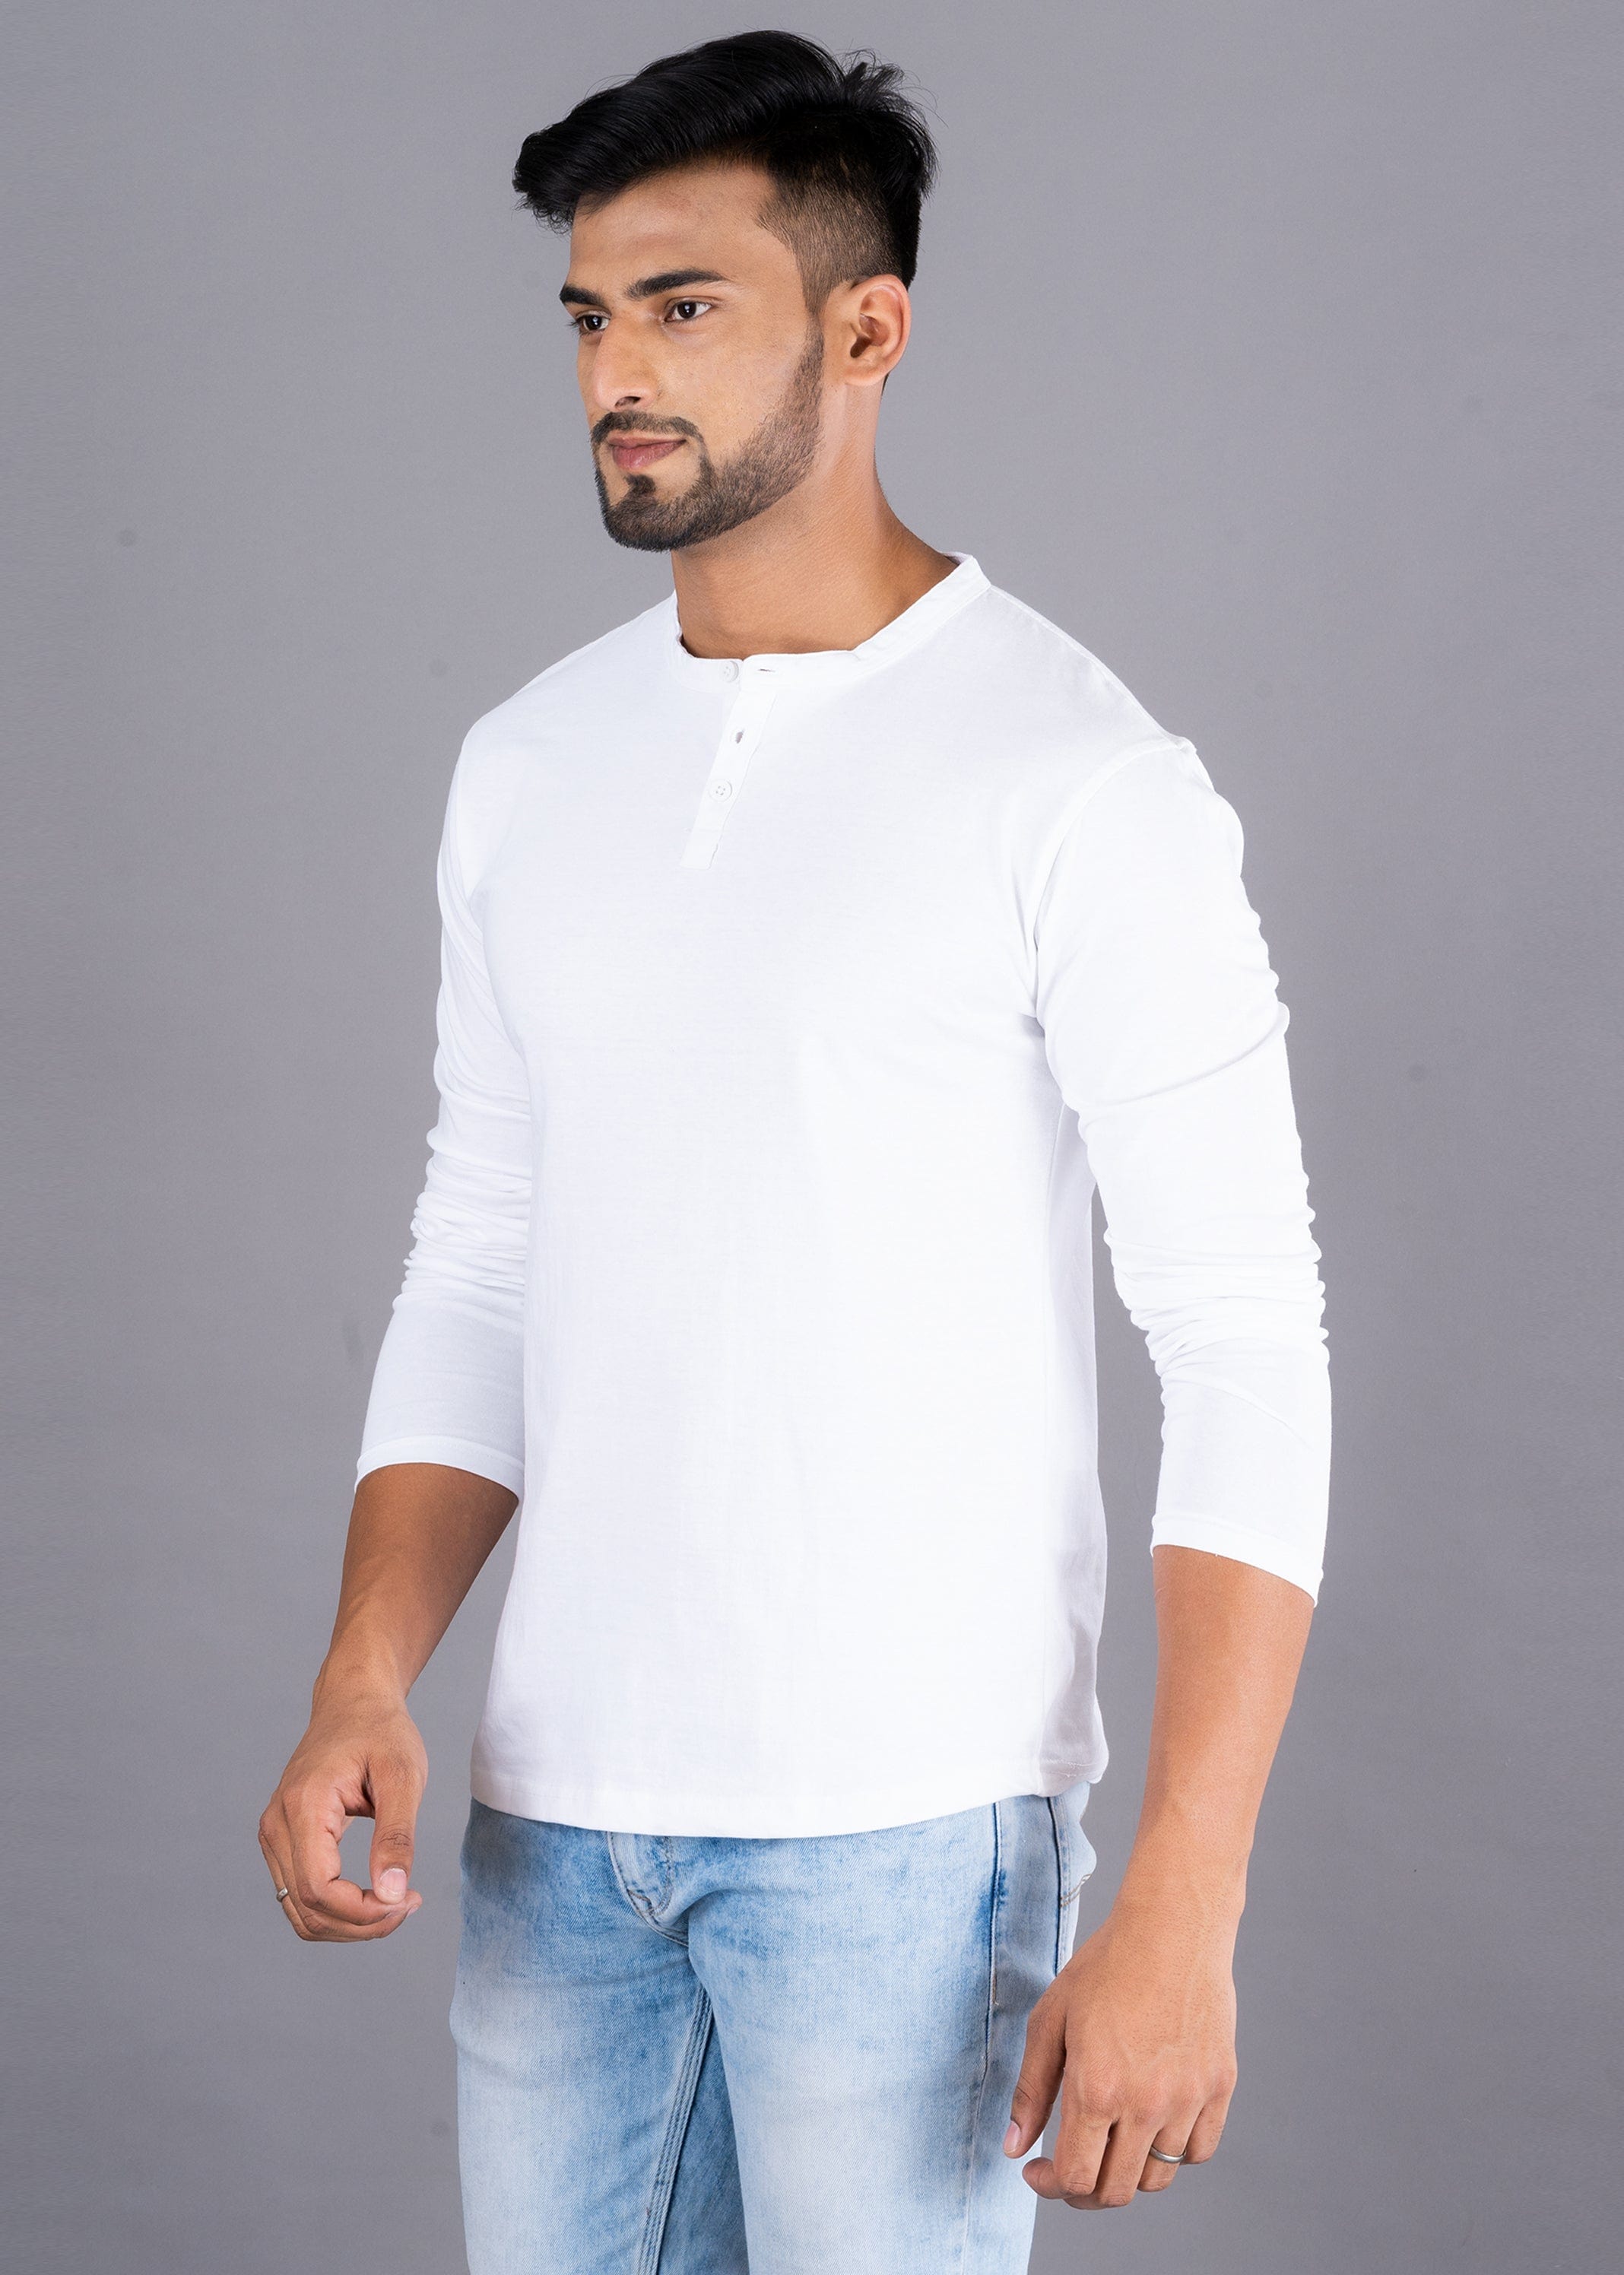 Solid Full Sleeve Premium Cotton Henley T-shirt For Men - White